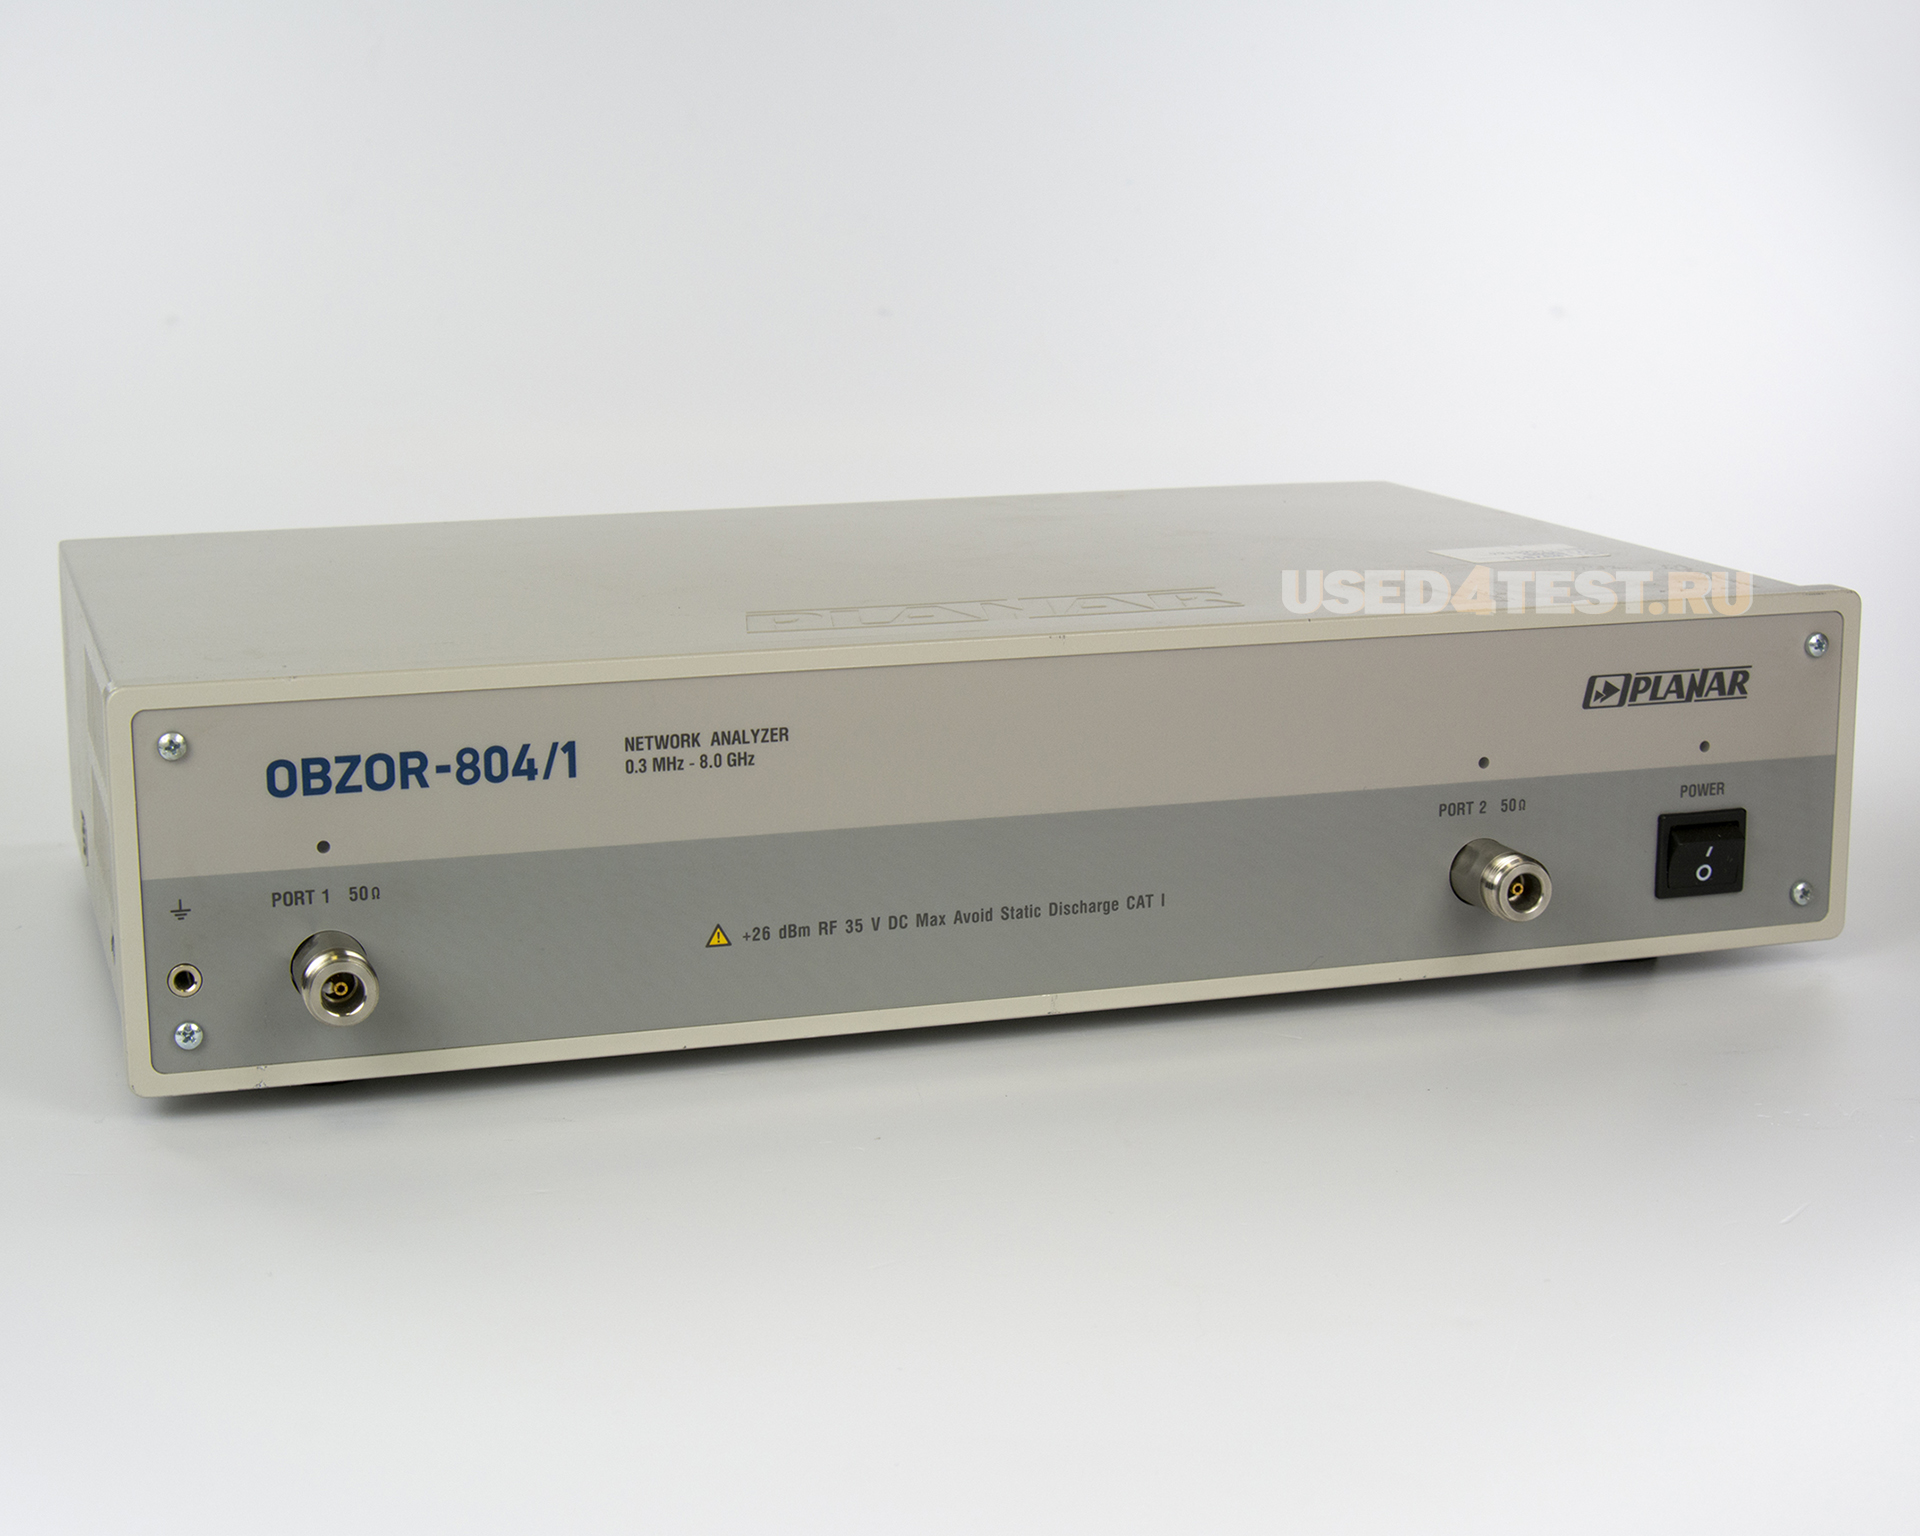 Векторный анализатор цепей
 Планар ОБЗОР-804/1
 с диапазоном частот от 300 кГц до 8 ГГц 
 
 
 
 

 Стоимость указана в Рублях DDP Москва по безналичному расчету включая НДС 20%
